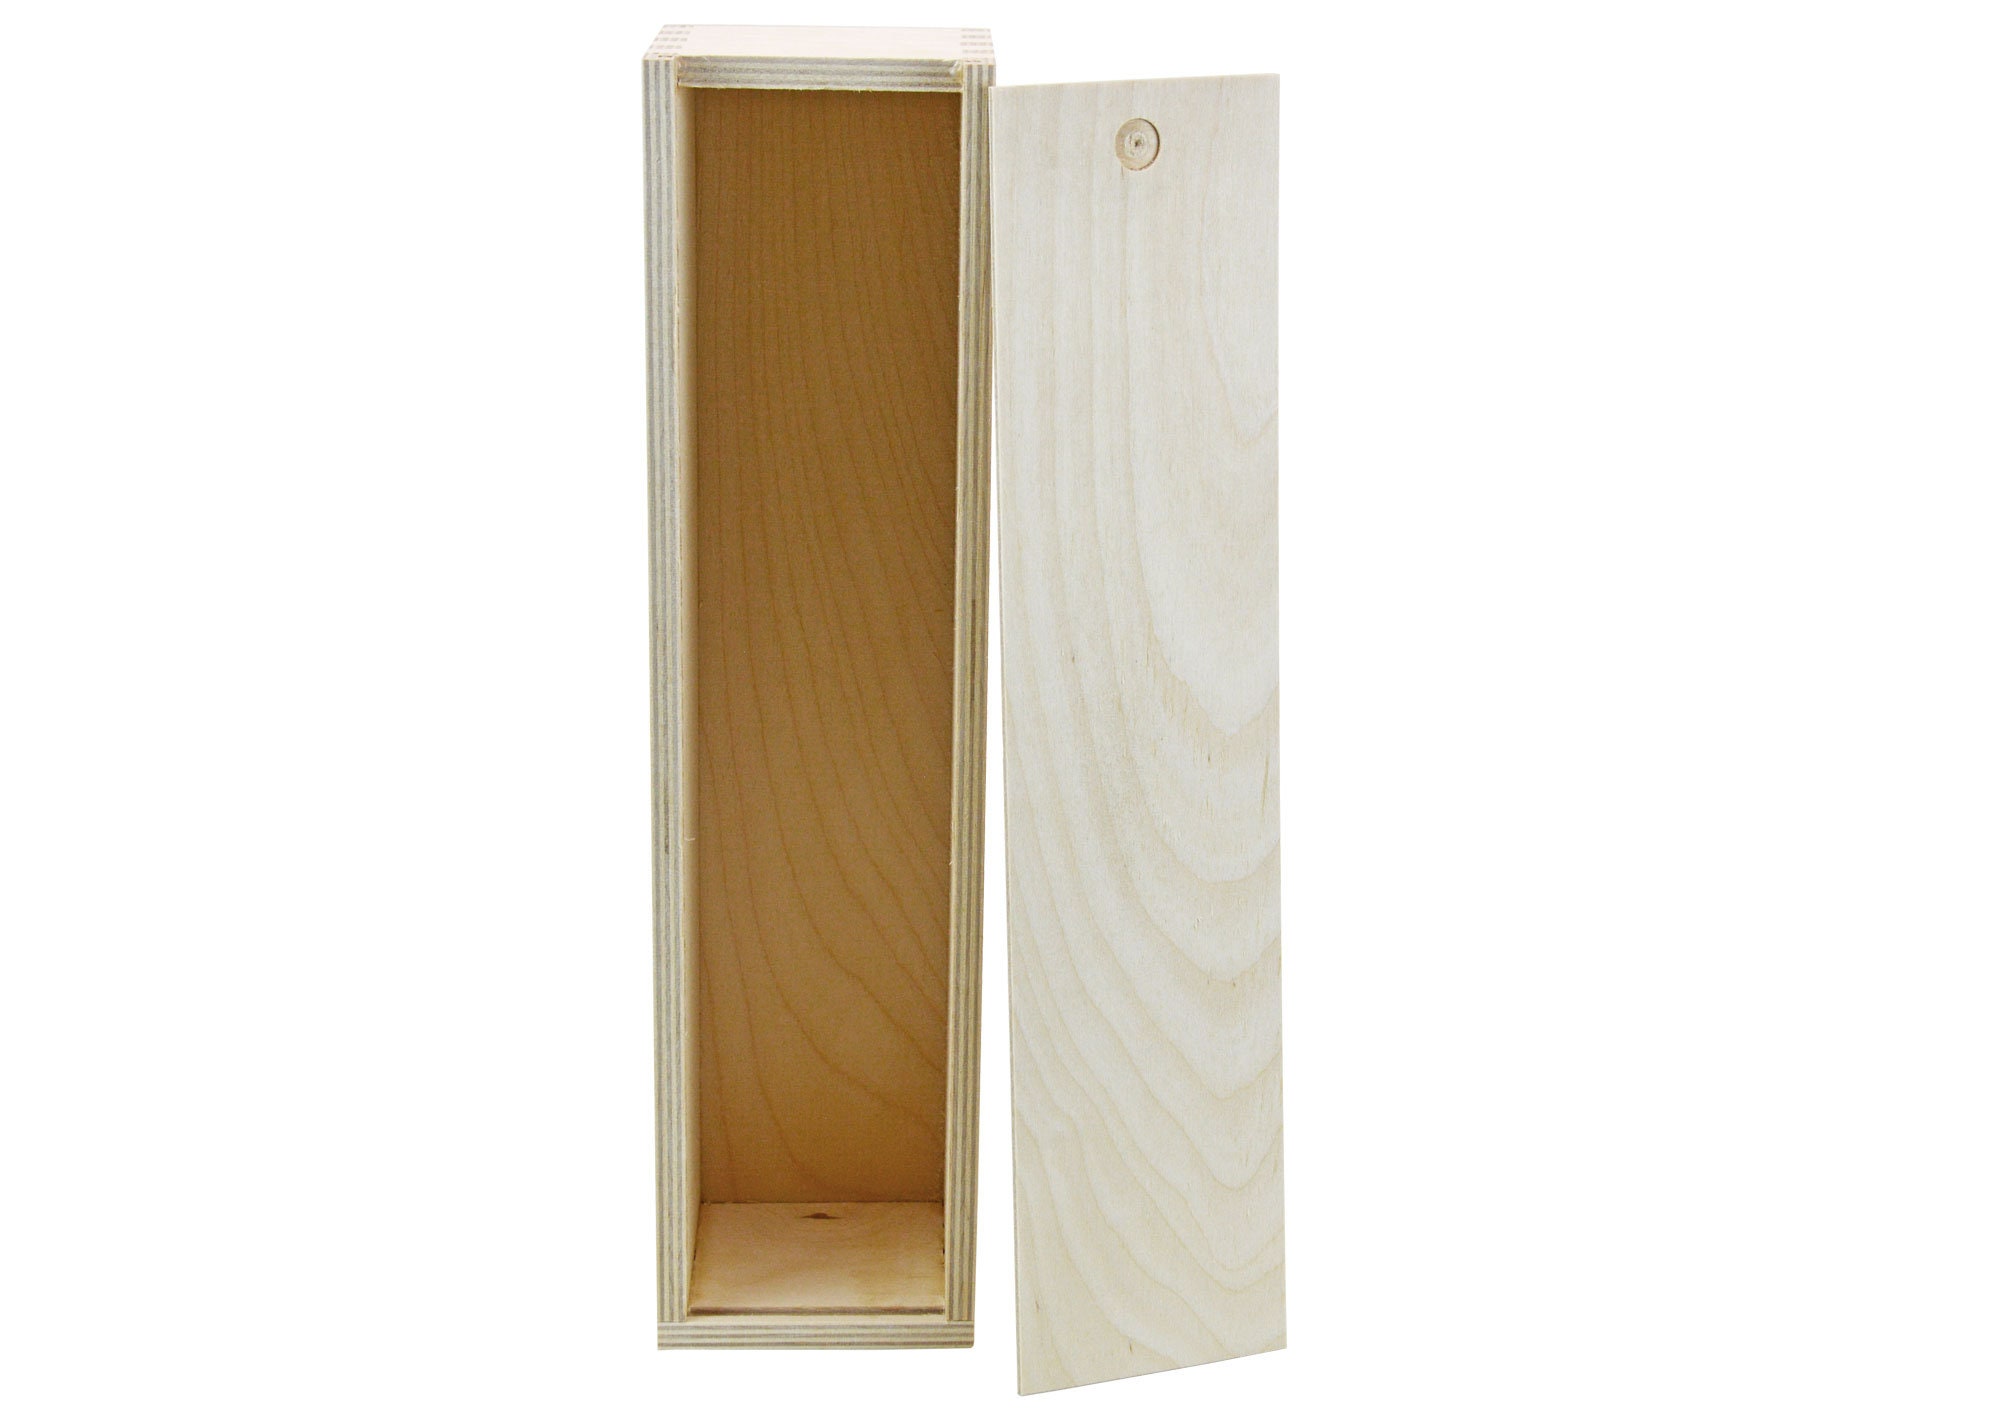 Petite boîte en bois - Avec couvercle - A personnaliser - 11,3x11,3x5 cm -  En ligne